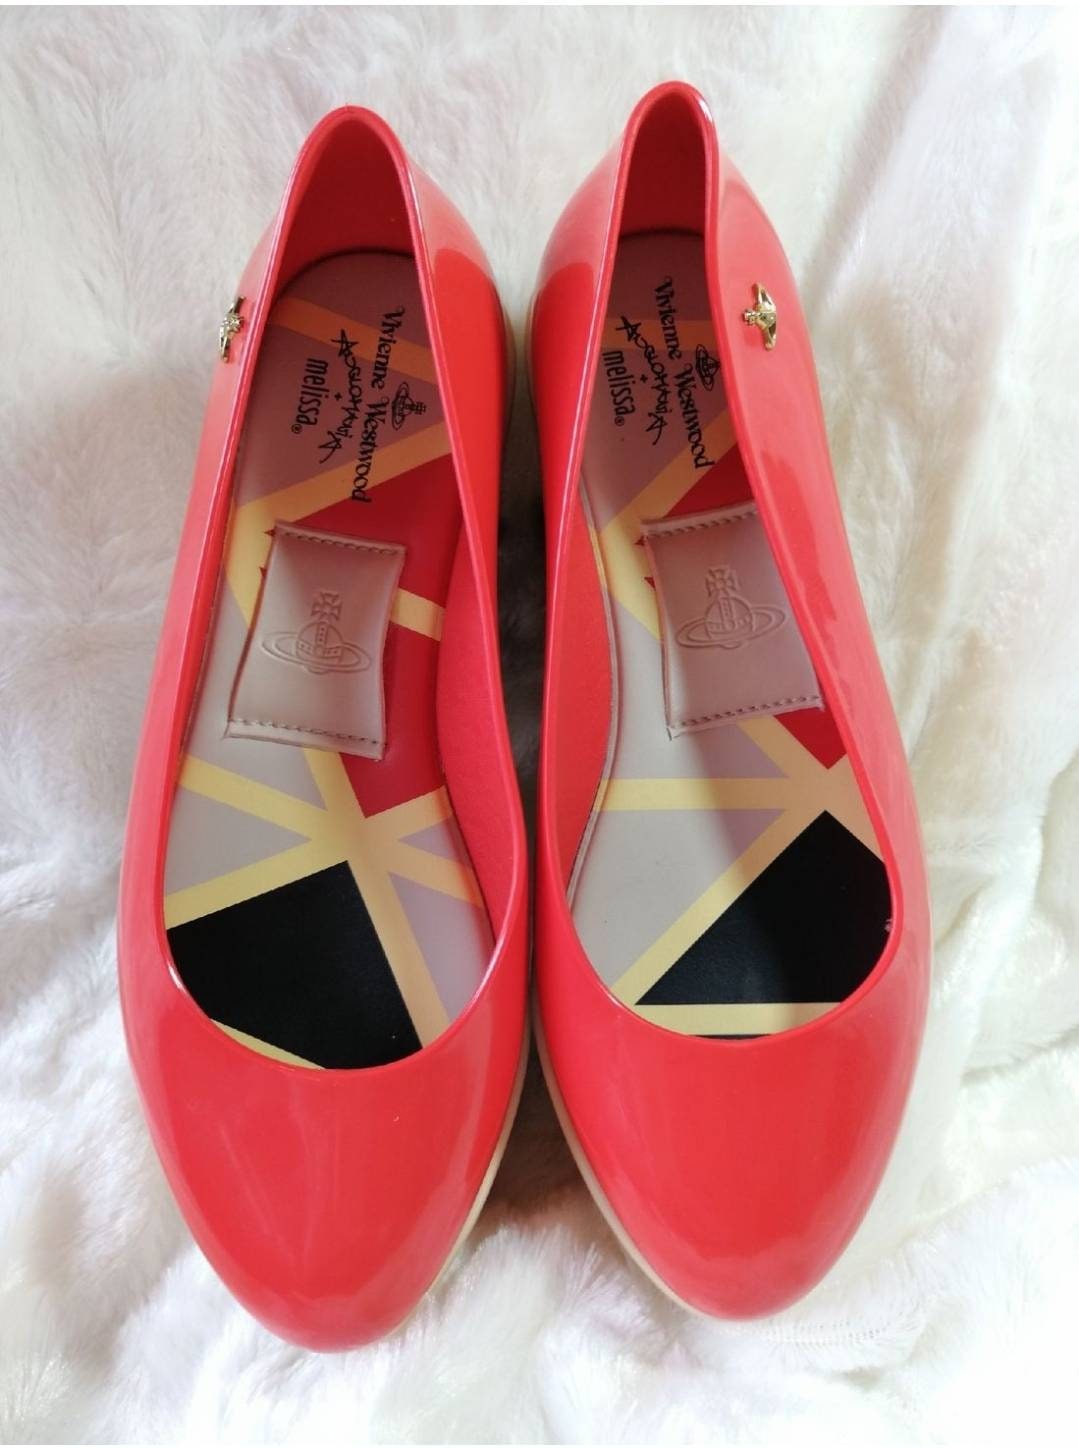 Vivienne Westwood Anglomania x Melissa Rocking Horse Ballerina's Zeer zeldzame nieuwe schoenen US 7 EUR 38 UK 5 Schoenen damesschoenen Mary Janes 